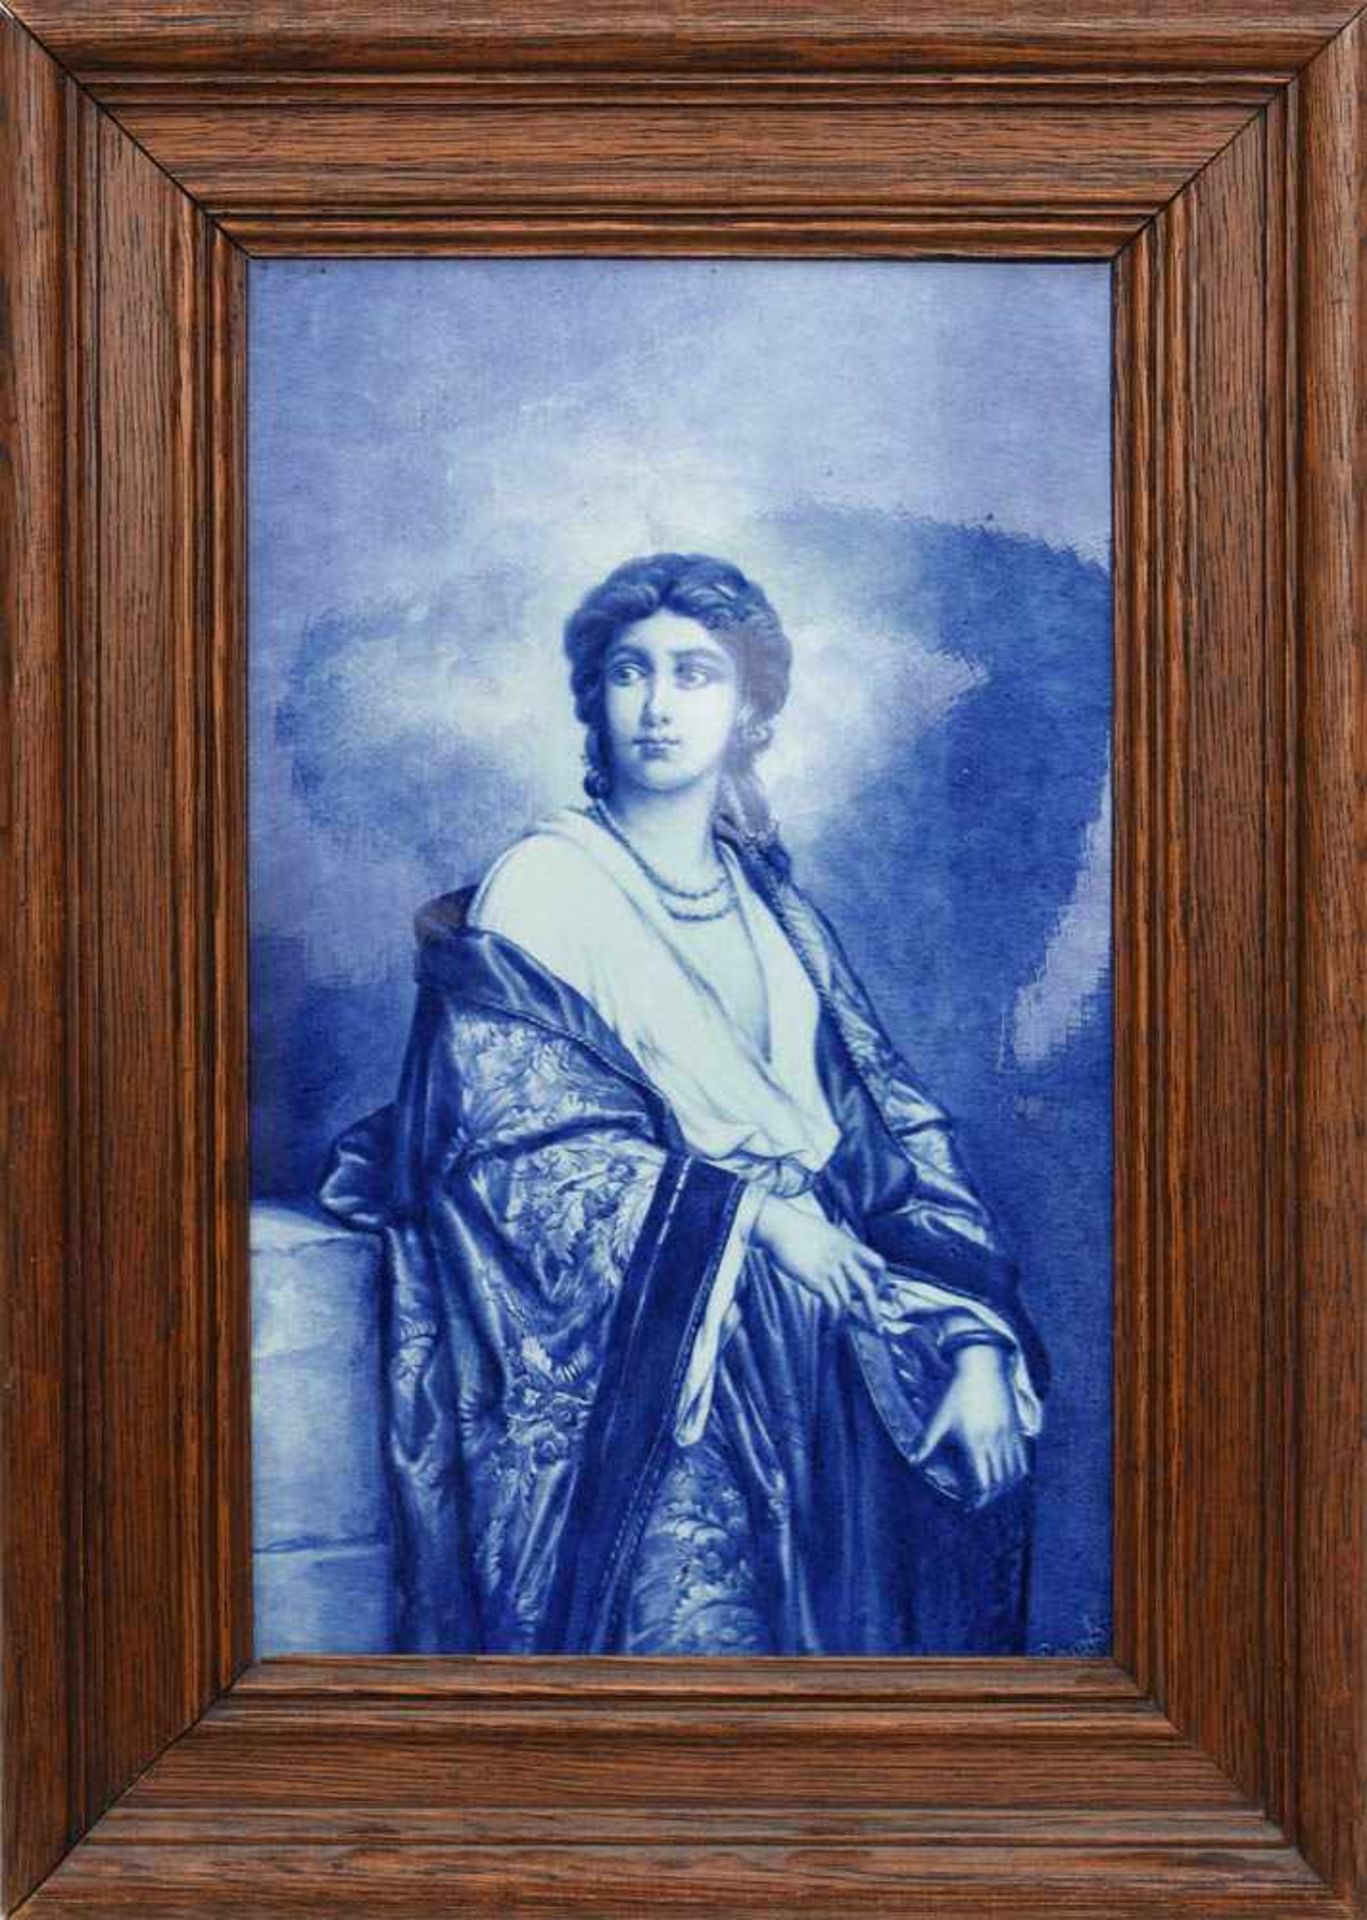 VILLEROY&BOCH METTLACH, Porzellan Bildplatte "Frauenporträt", kobaltblau bemalt, um 1900Nach einem